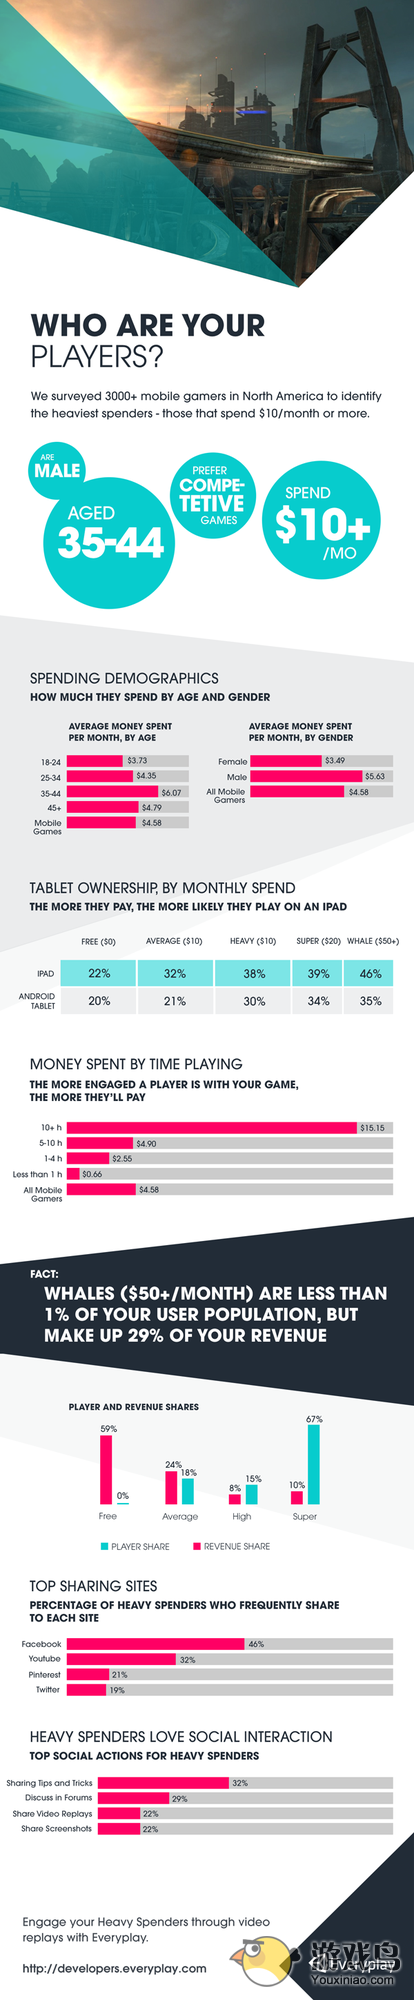 全球玩家调查 35岁以上男性玩家为付费主力[图]图片1